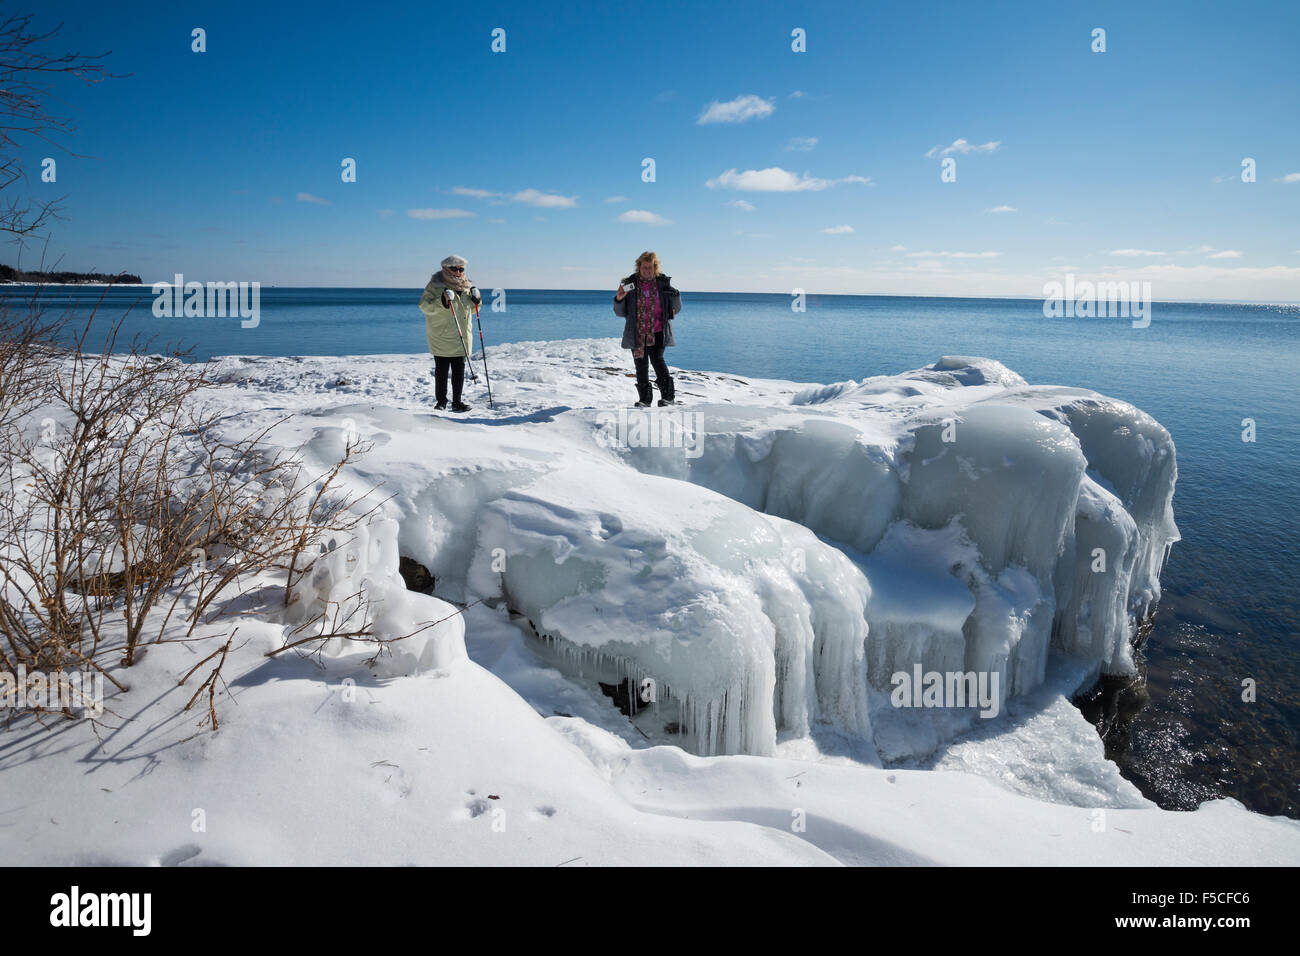 Dos mujeres adultas explorar un traicionero banco de nieve helada en la orilla del lago congelado Superior en invierno, dos puertos, MN, EE.UU. Foto de stock